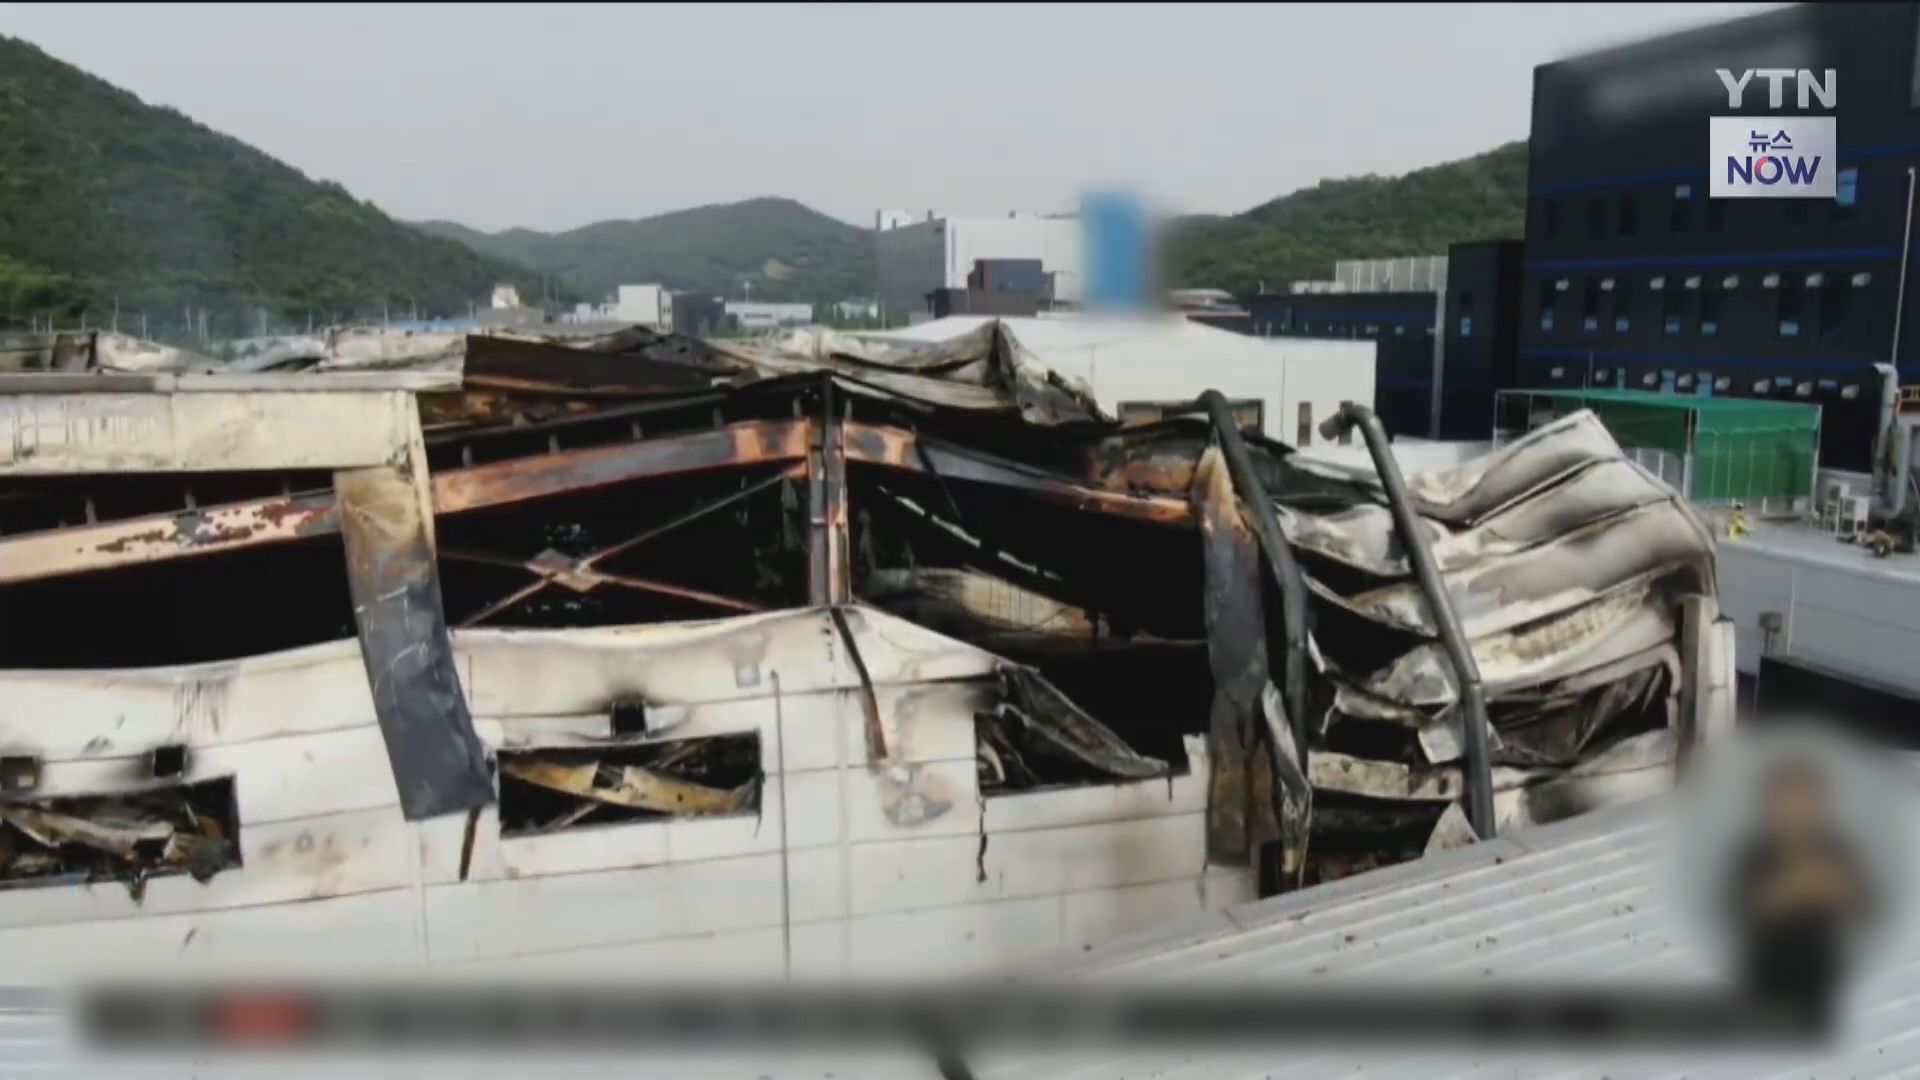 京畿道鋰電池廠火災釀最少17中國人亡  韓媒指或涉人為疏忽